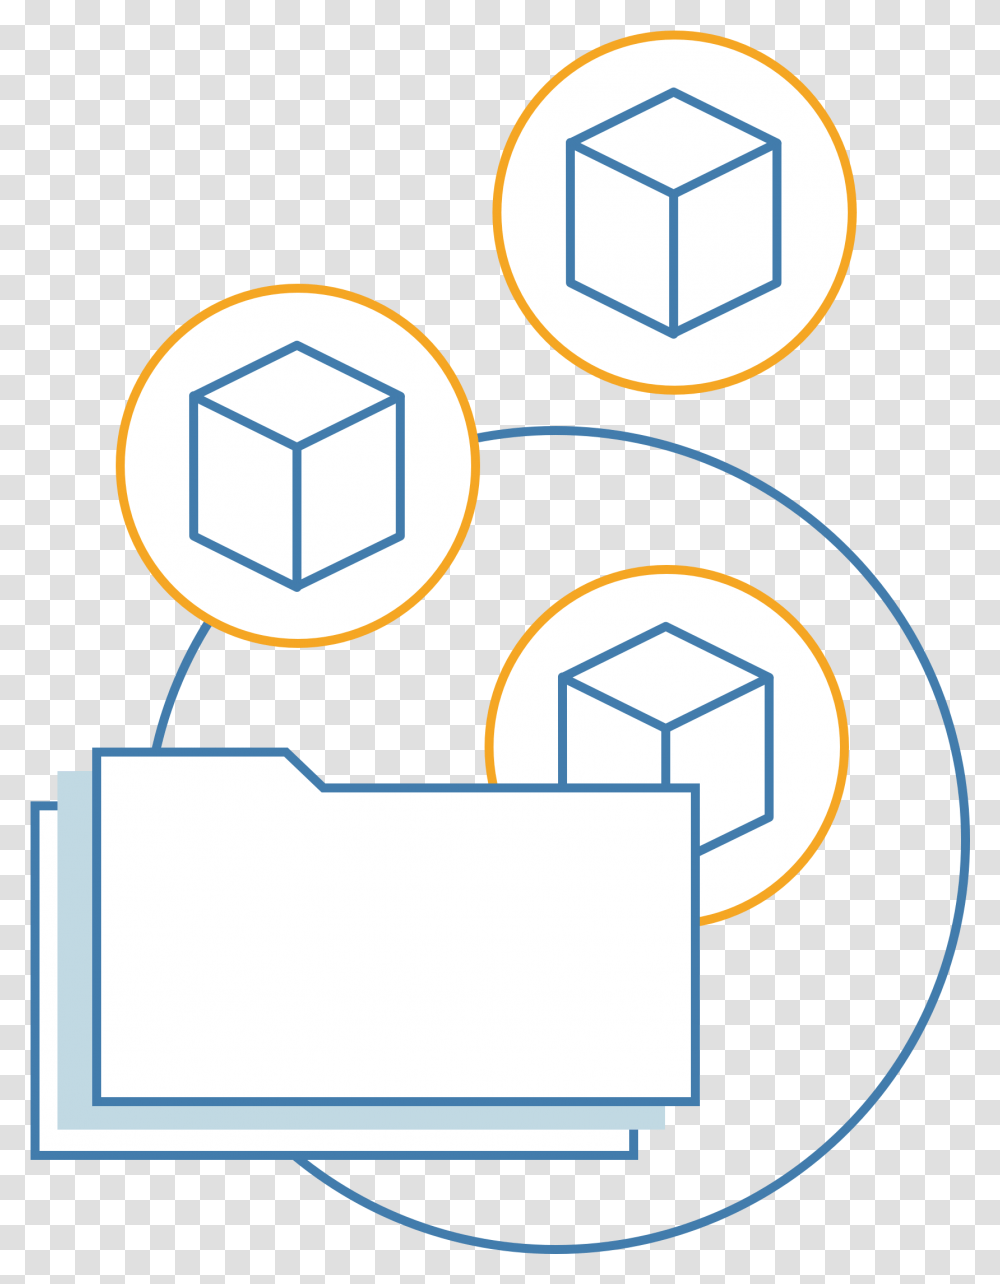 Models Img3 Illustration, Network, Label, Rubix Cube Transparent Png